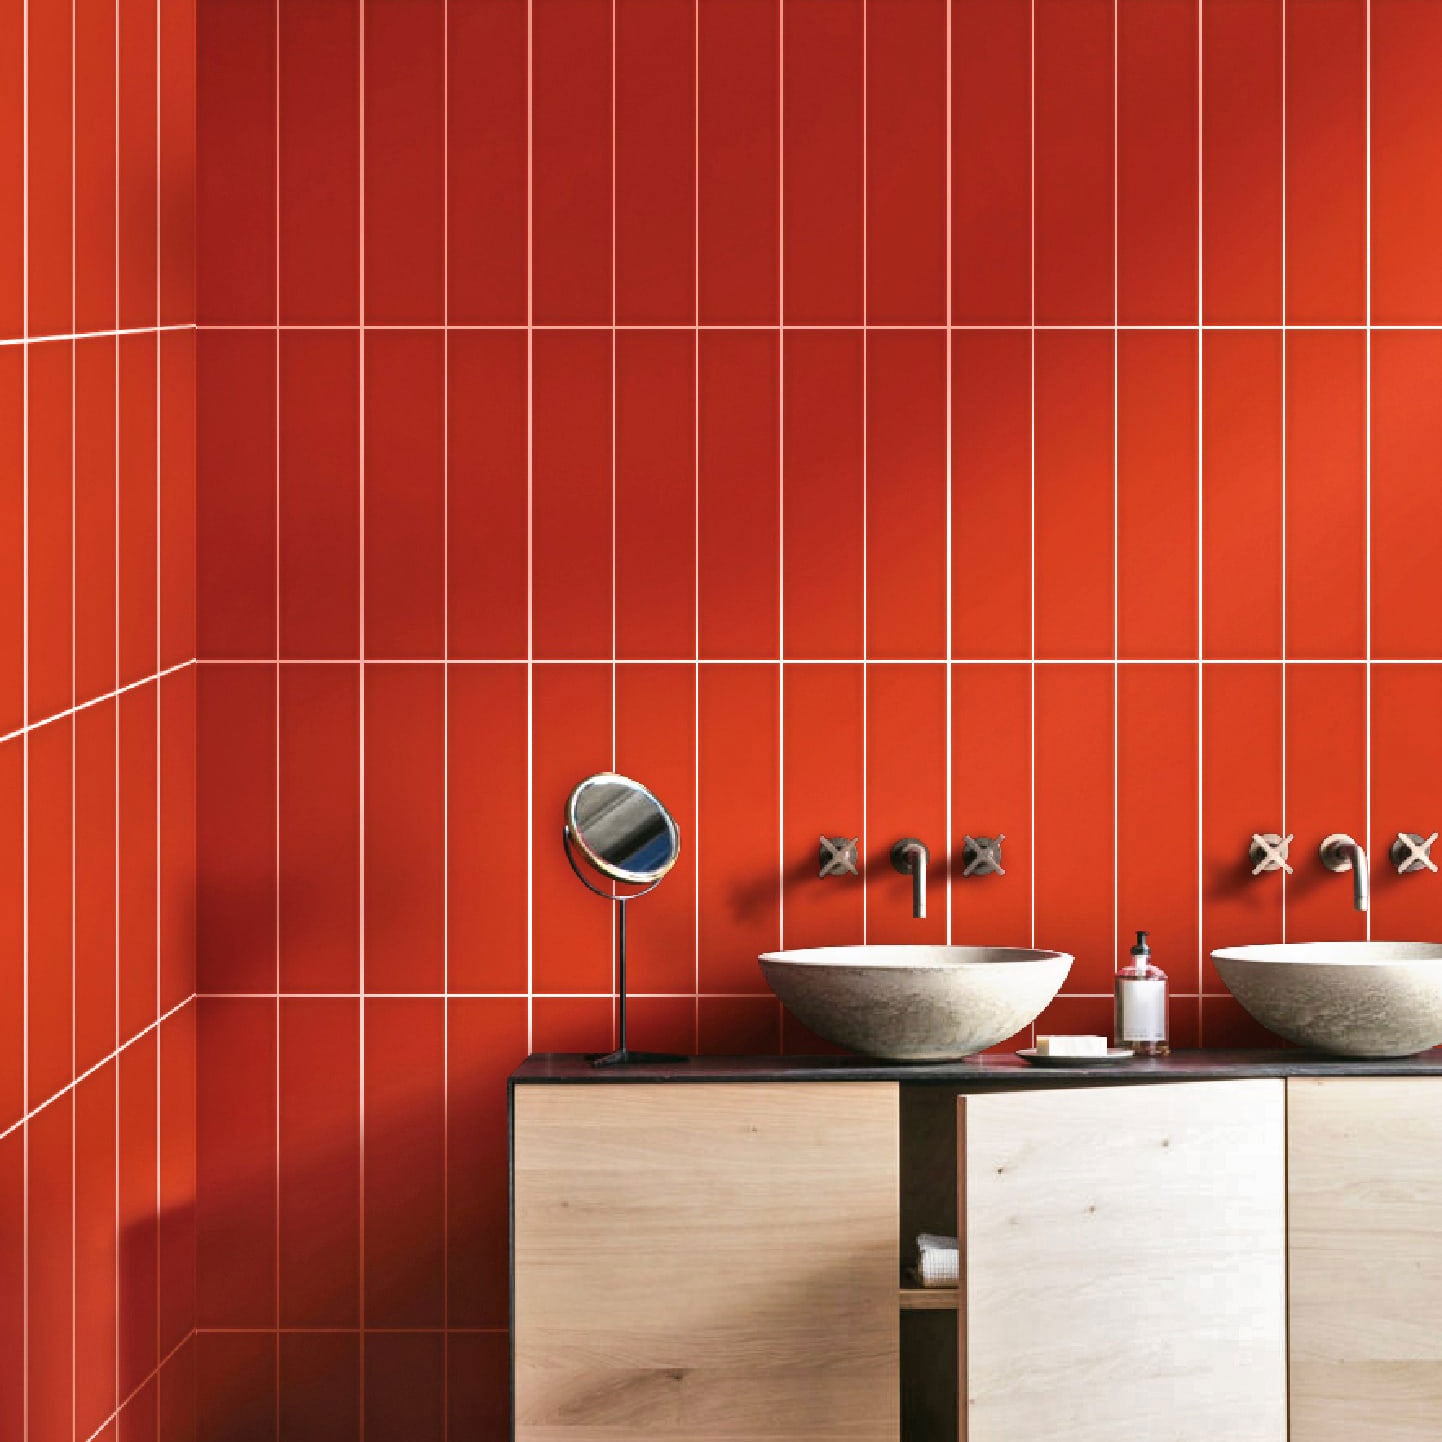 Rainbow Lustré Salle de bain Rouge / Rainbow Glossy Bathroom Red